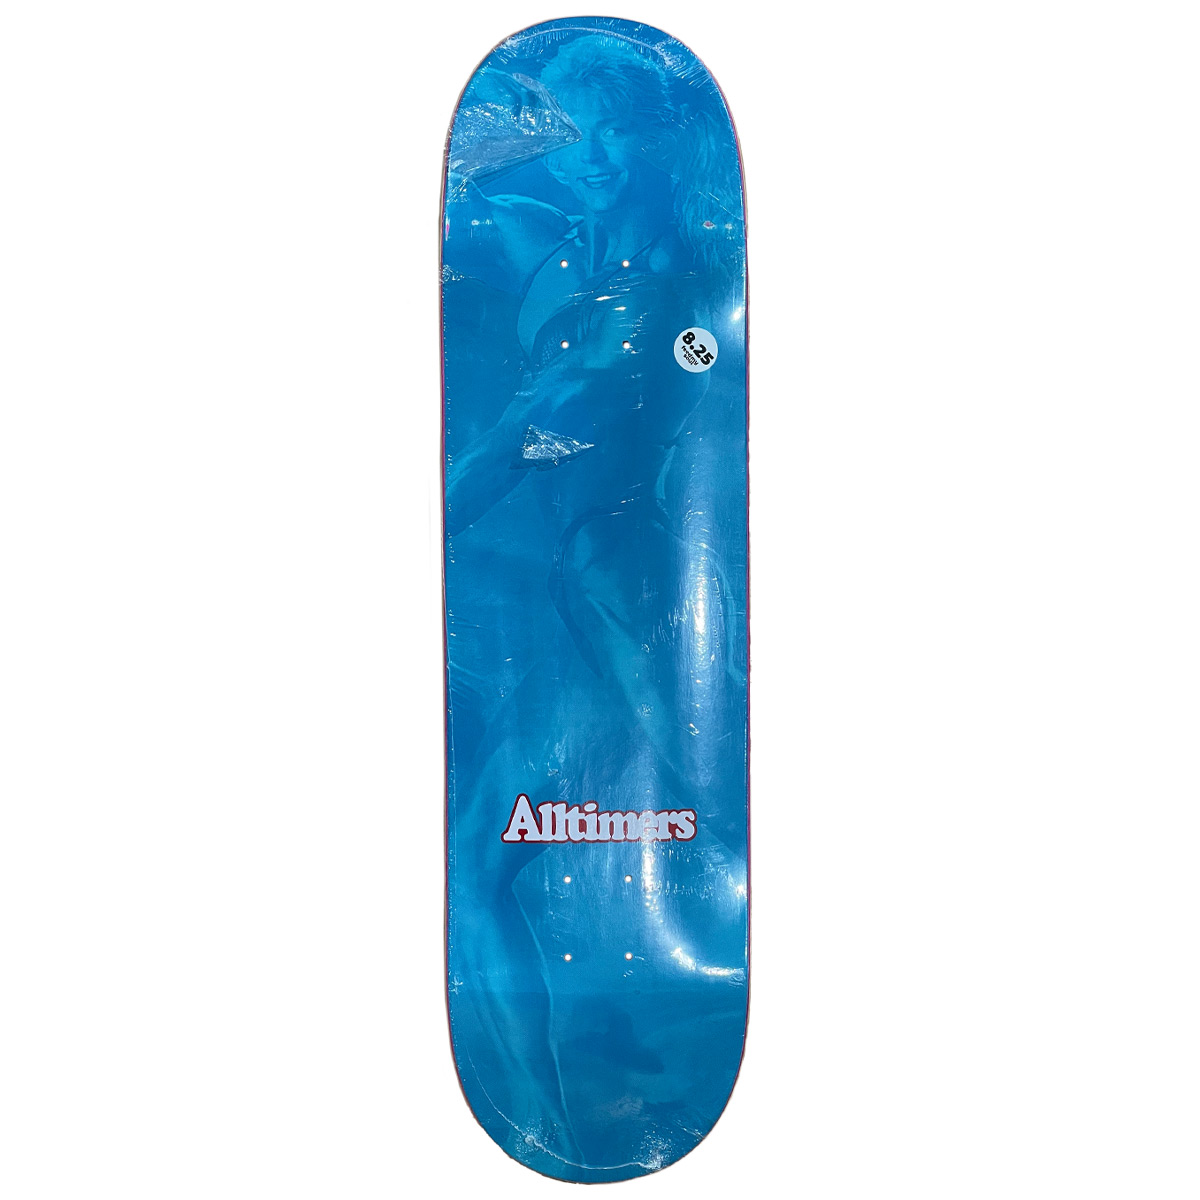 Alltimers Skateboard Deck Flex 8.25" (blue)